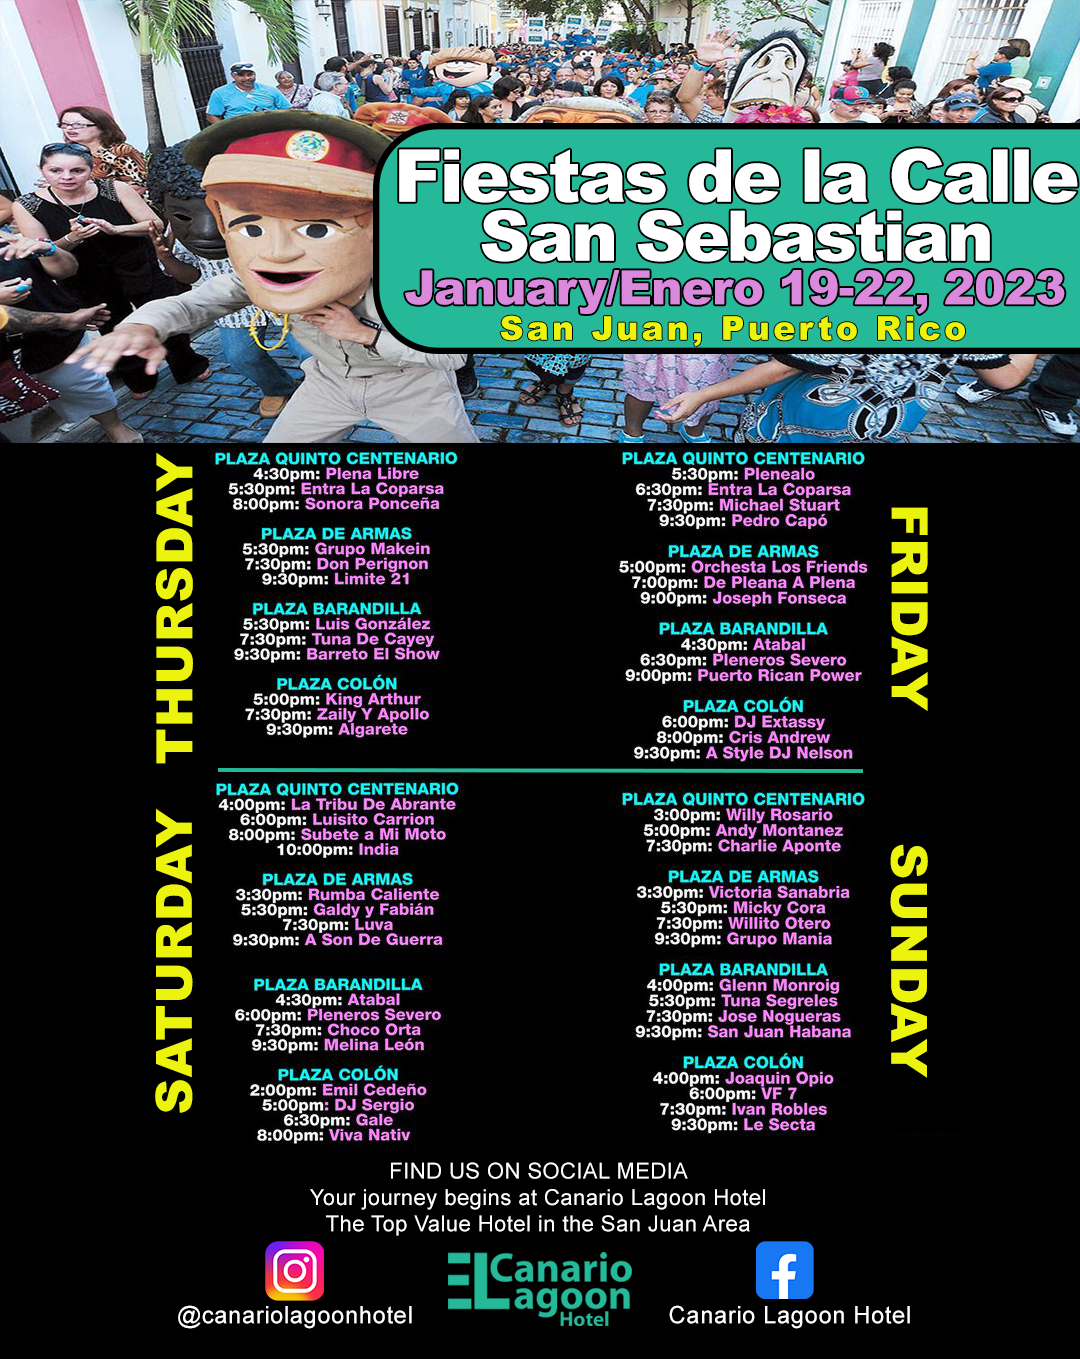 Fiestas de la Calle San Sebastian 2023